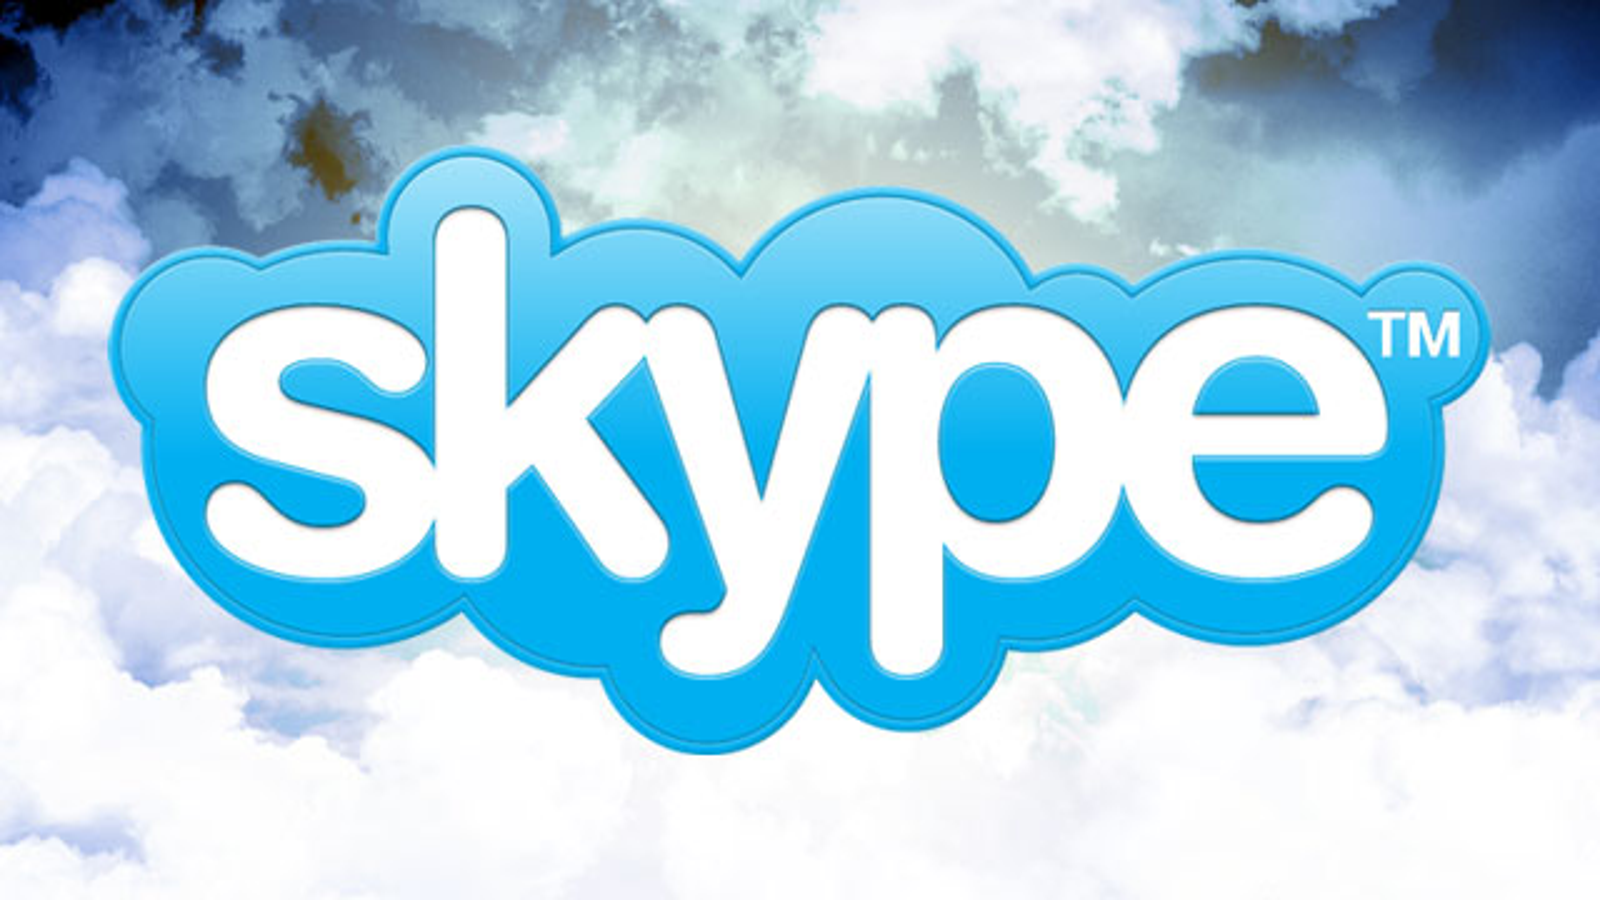 download skype for mac 10.7.5